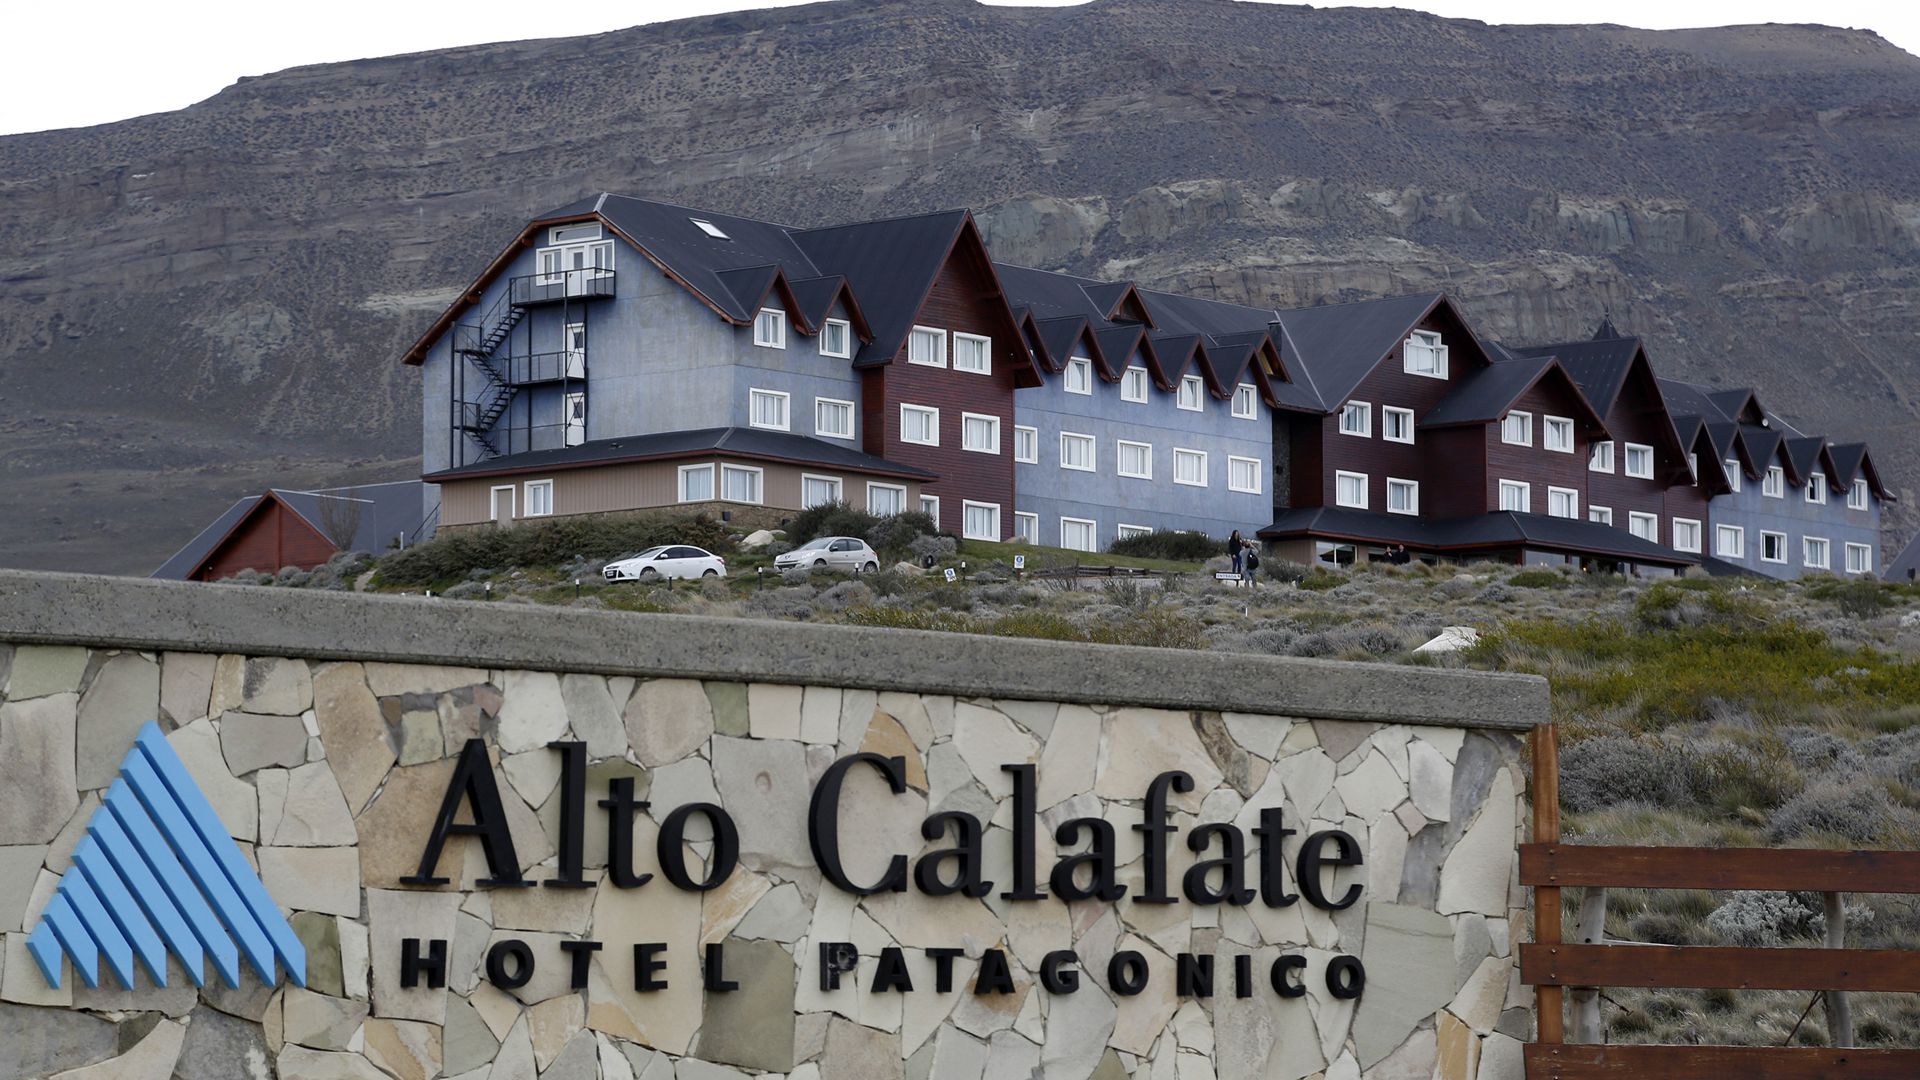 Hotel Alto Calafate, propiedad de Hotesur SA, la firma de los Kirchner (NA)